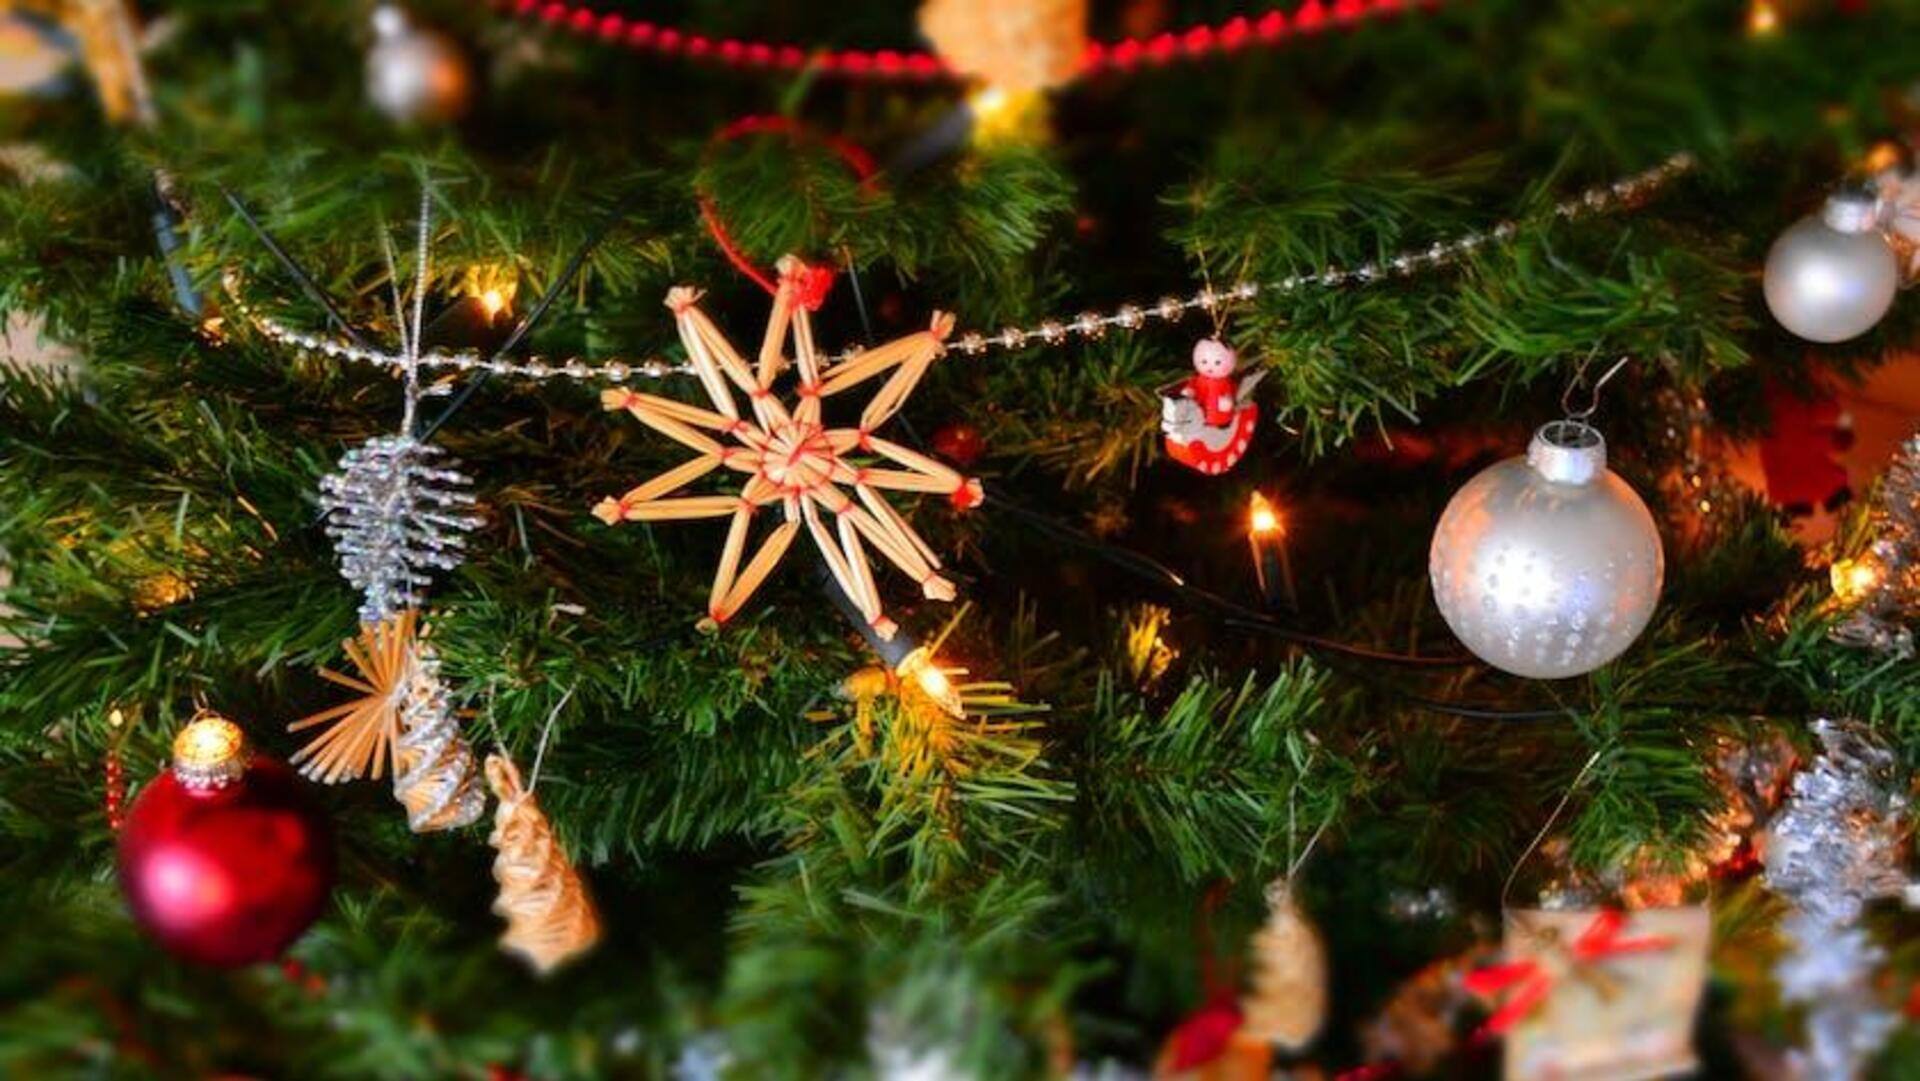 क्रिसमस को लेकर दुनियाभर में निभाई जाने वाली 5 अनोखी परंपराएं, जानकर रह जाएंगे दंग